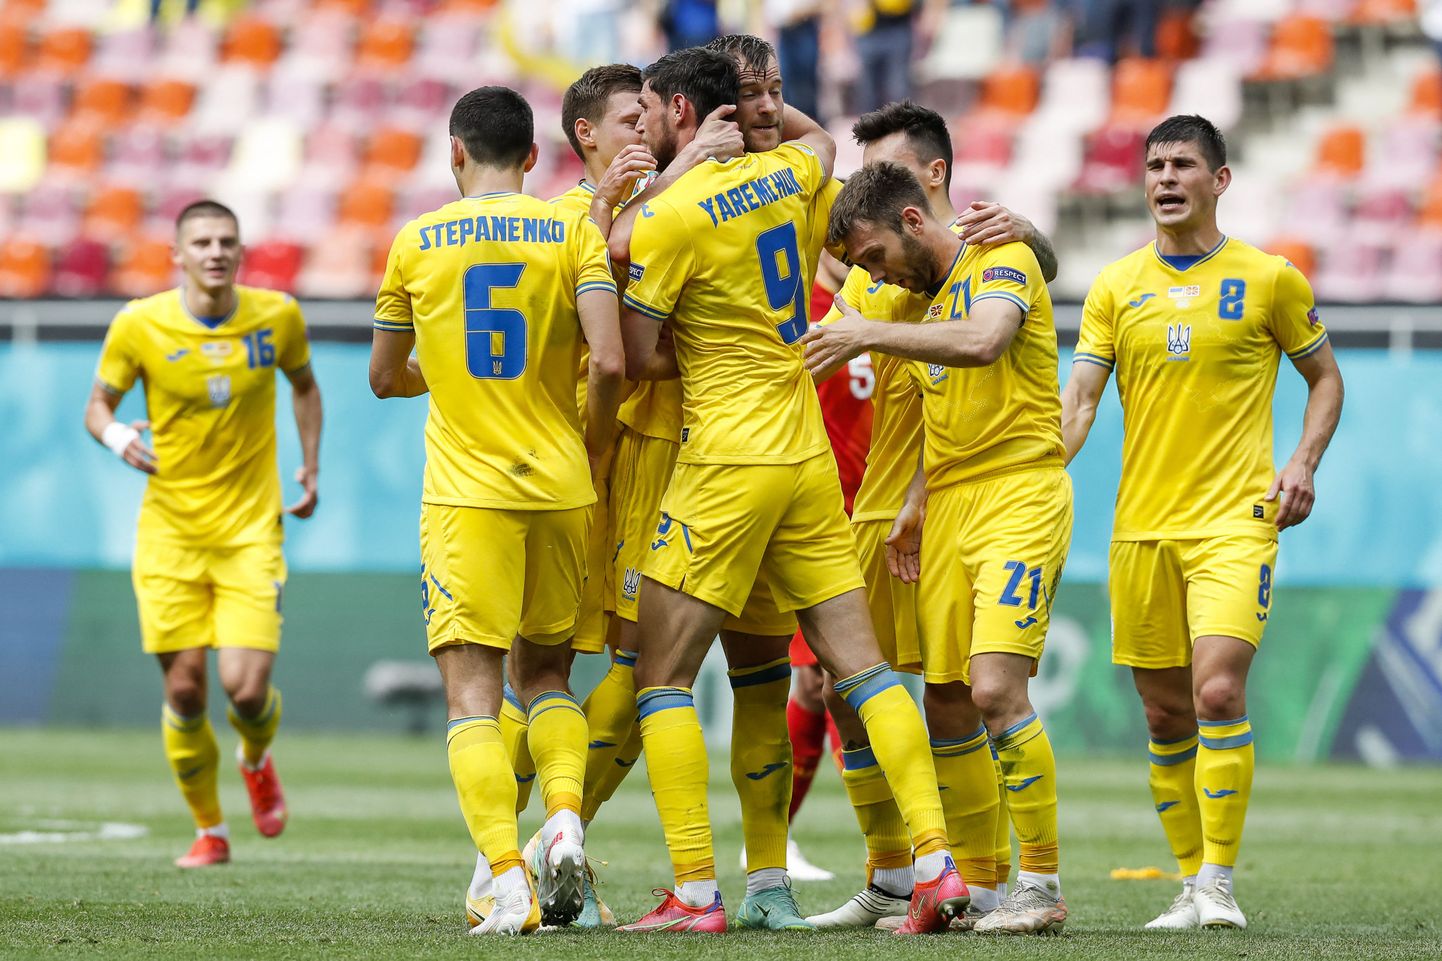 Игроки футбольной сборной Украины, иллюстративное фото.